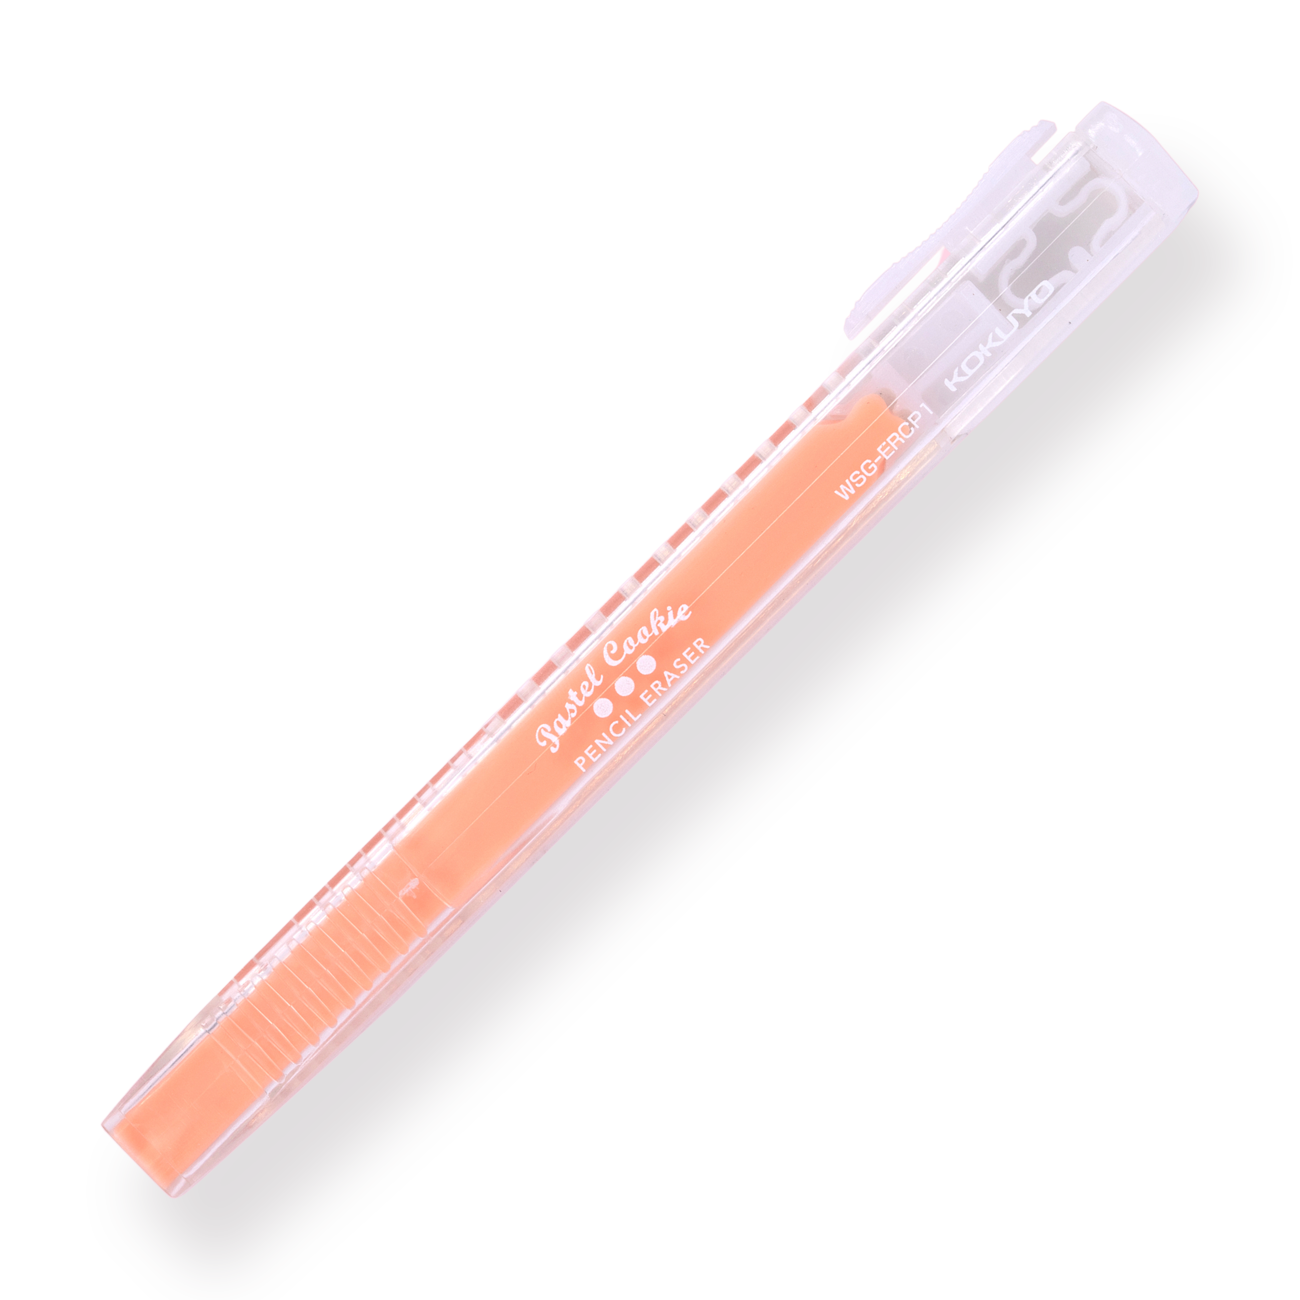 Kokuyo Pencil Eraser - Peach Sorbet